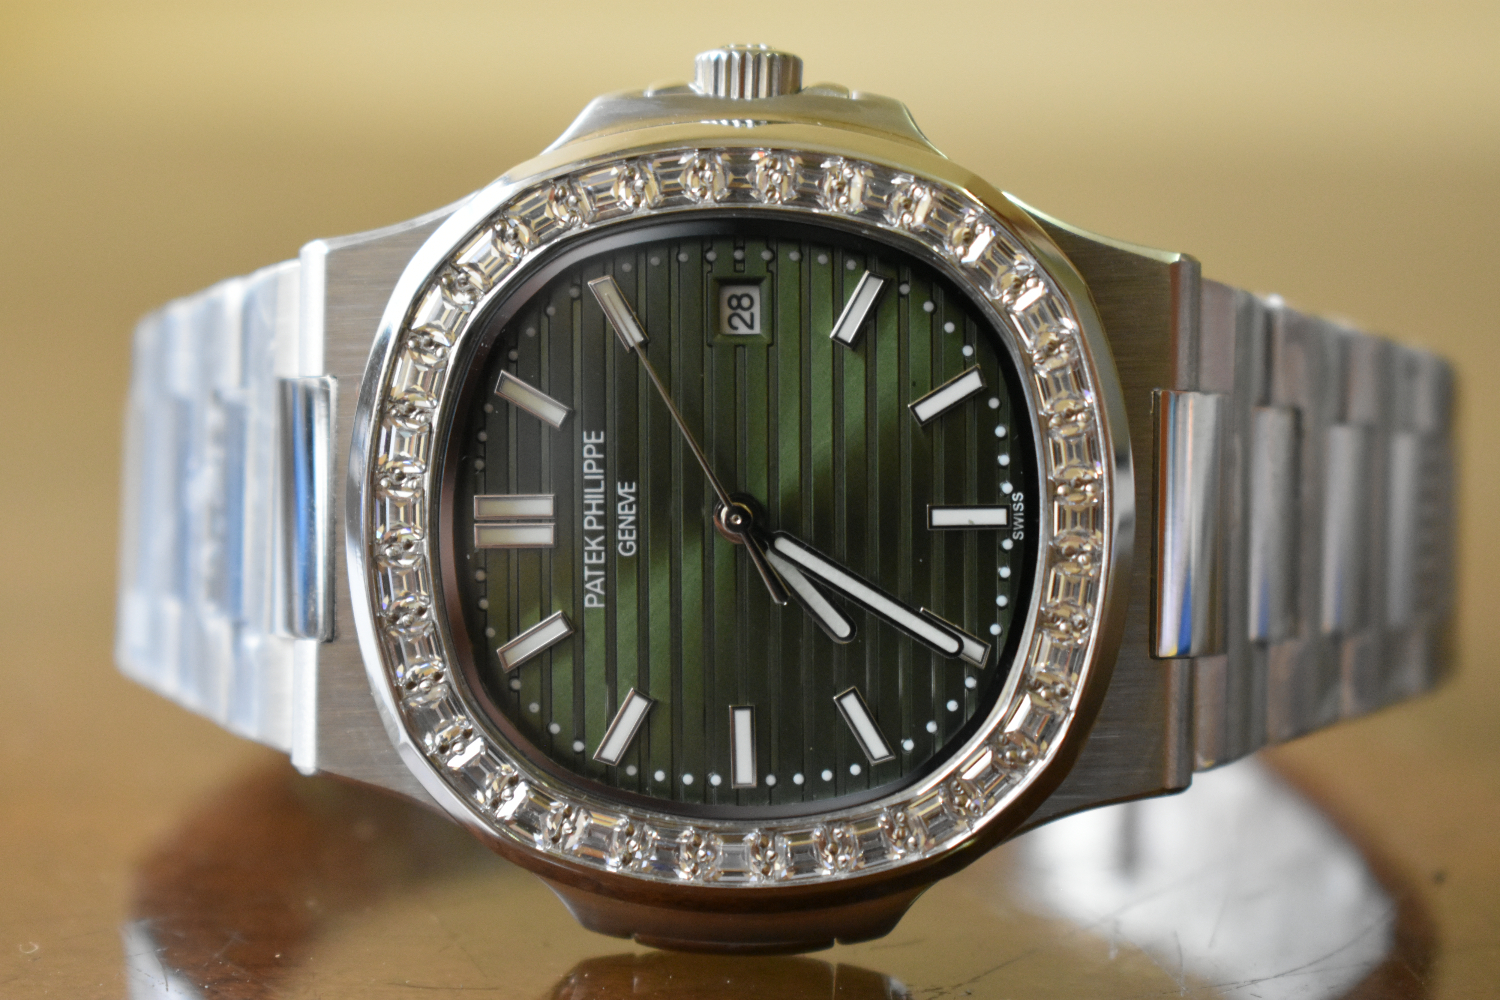 Patek Philippe Nautilus Green Dial 5711/1300 A-001 Baguette Cut Diamonds Watch for sale in Nairobi,Kenya.